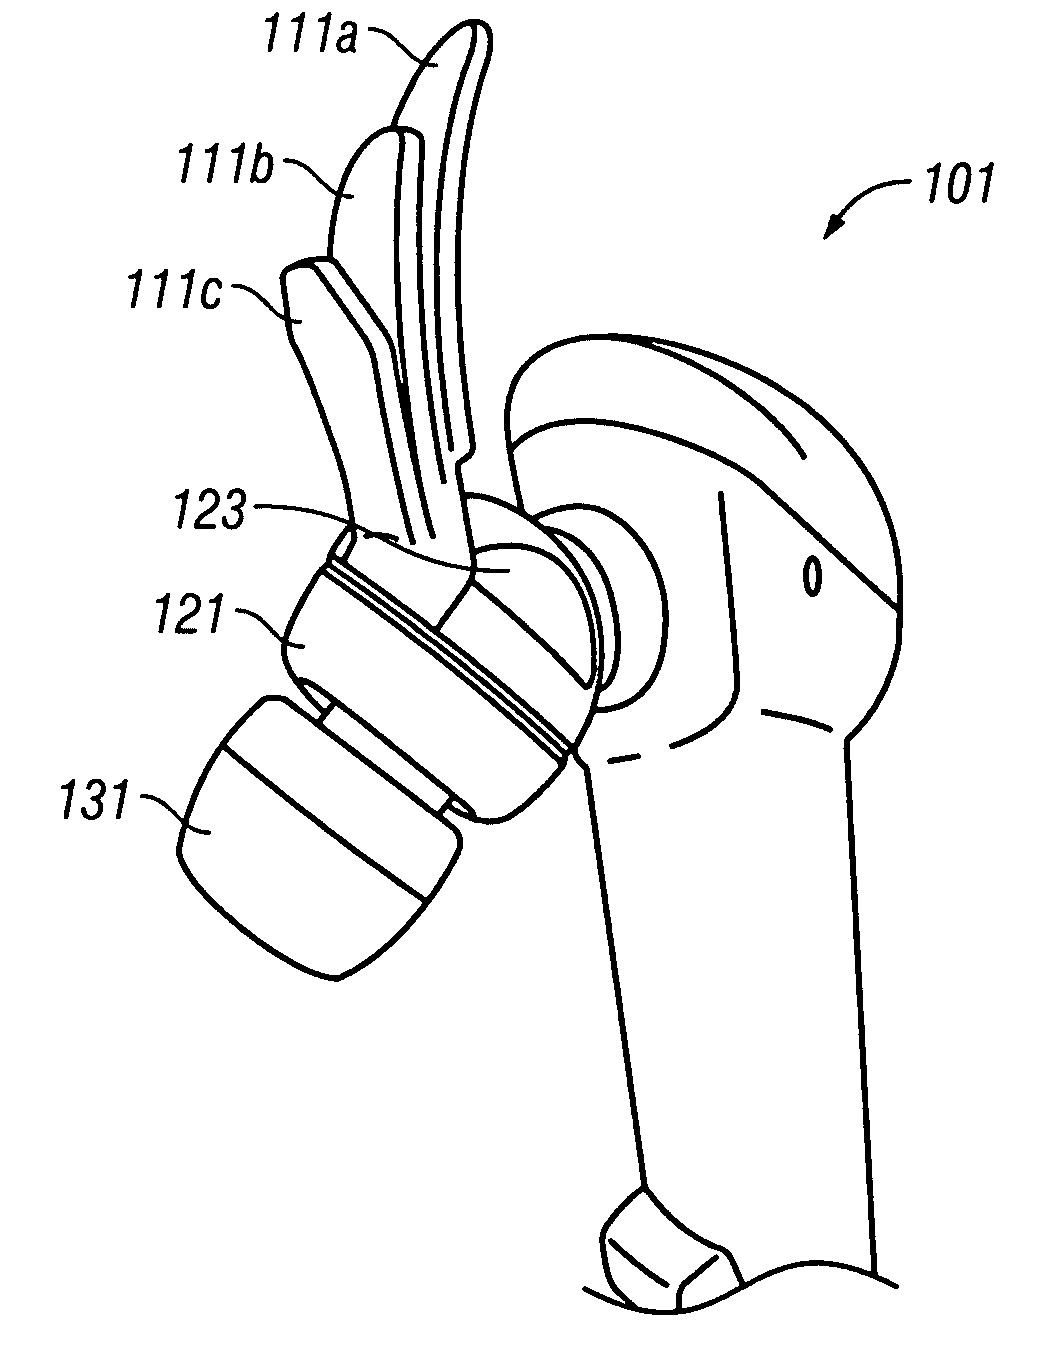 Ear bud speaker earphone with retainer tab